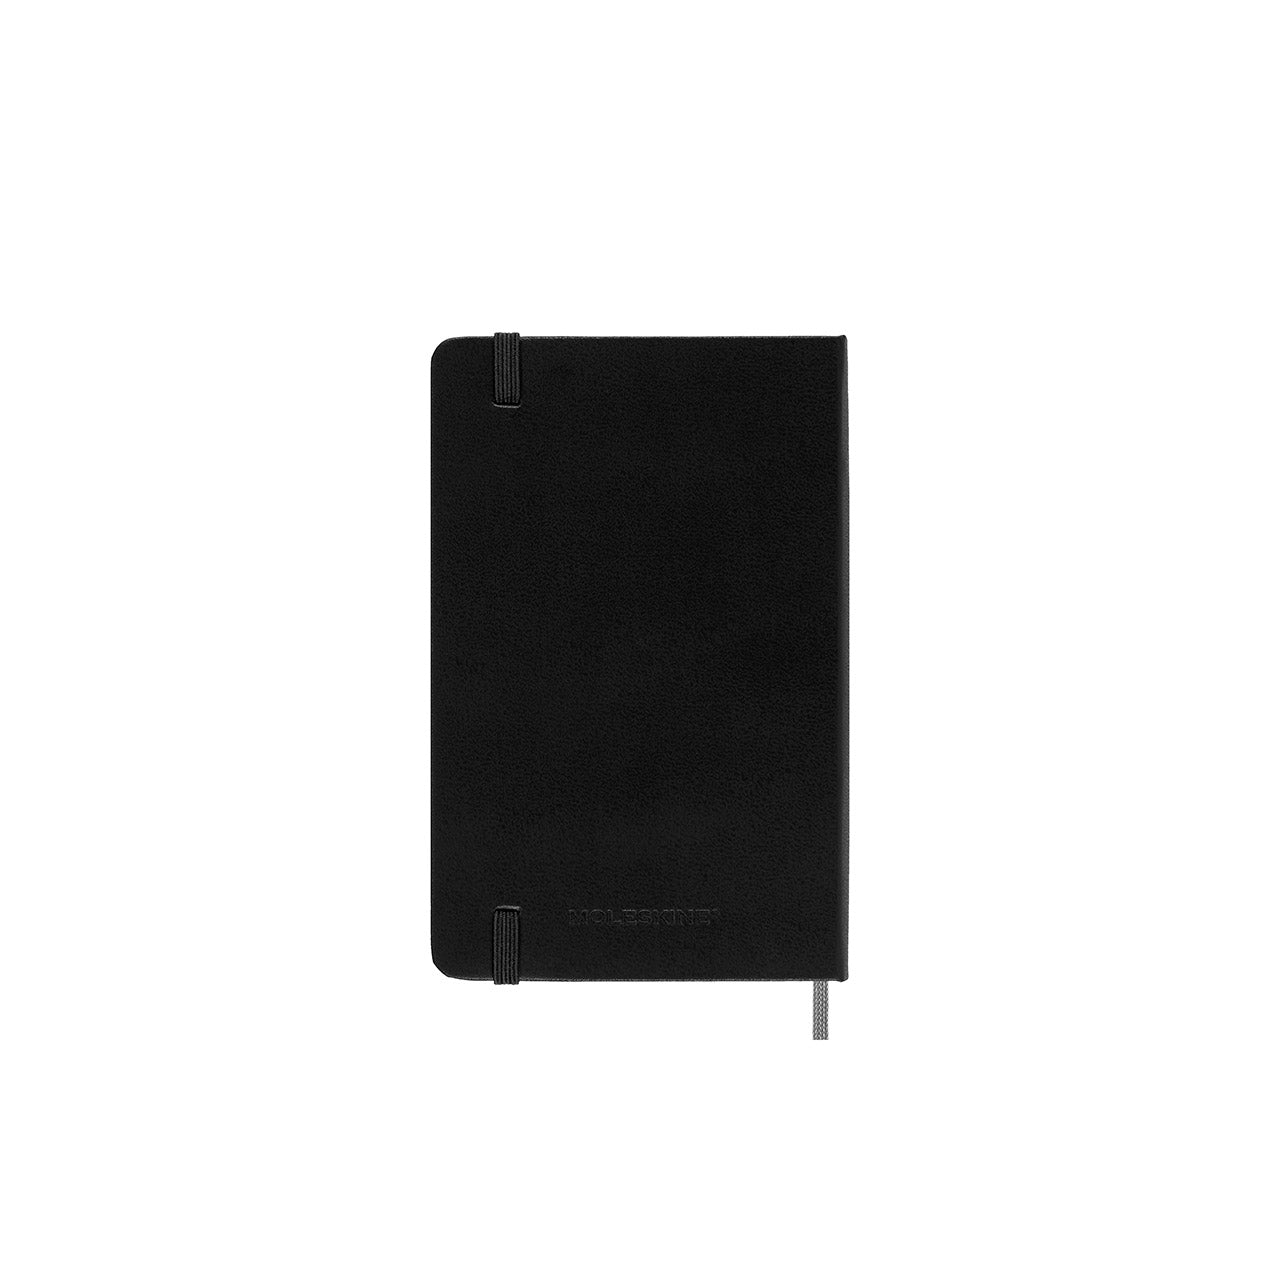 Smart Hard Cover Notebook Pocket